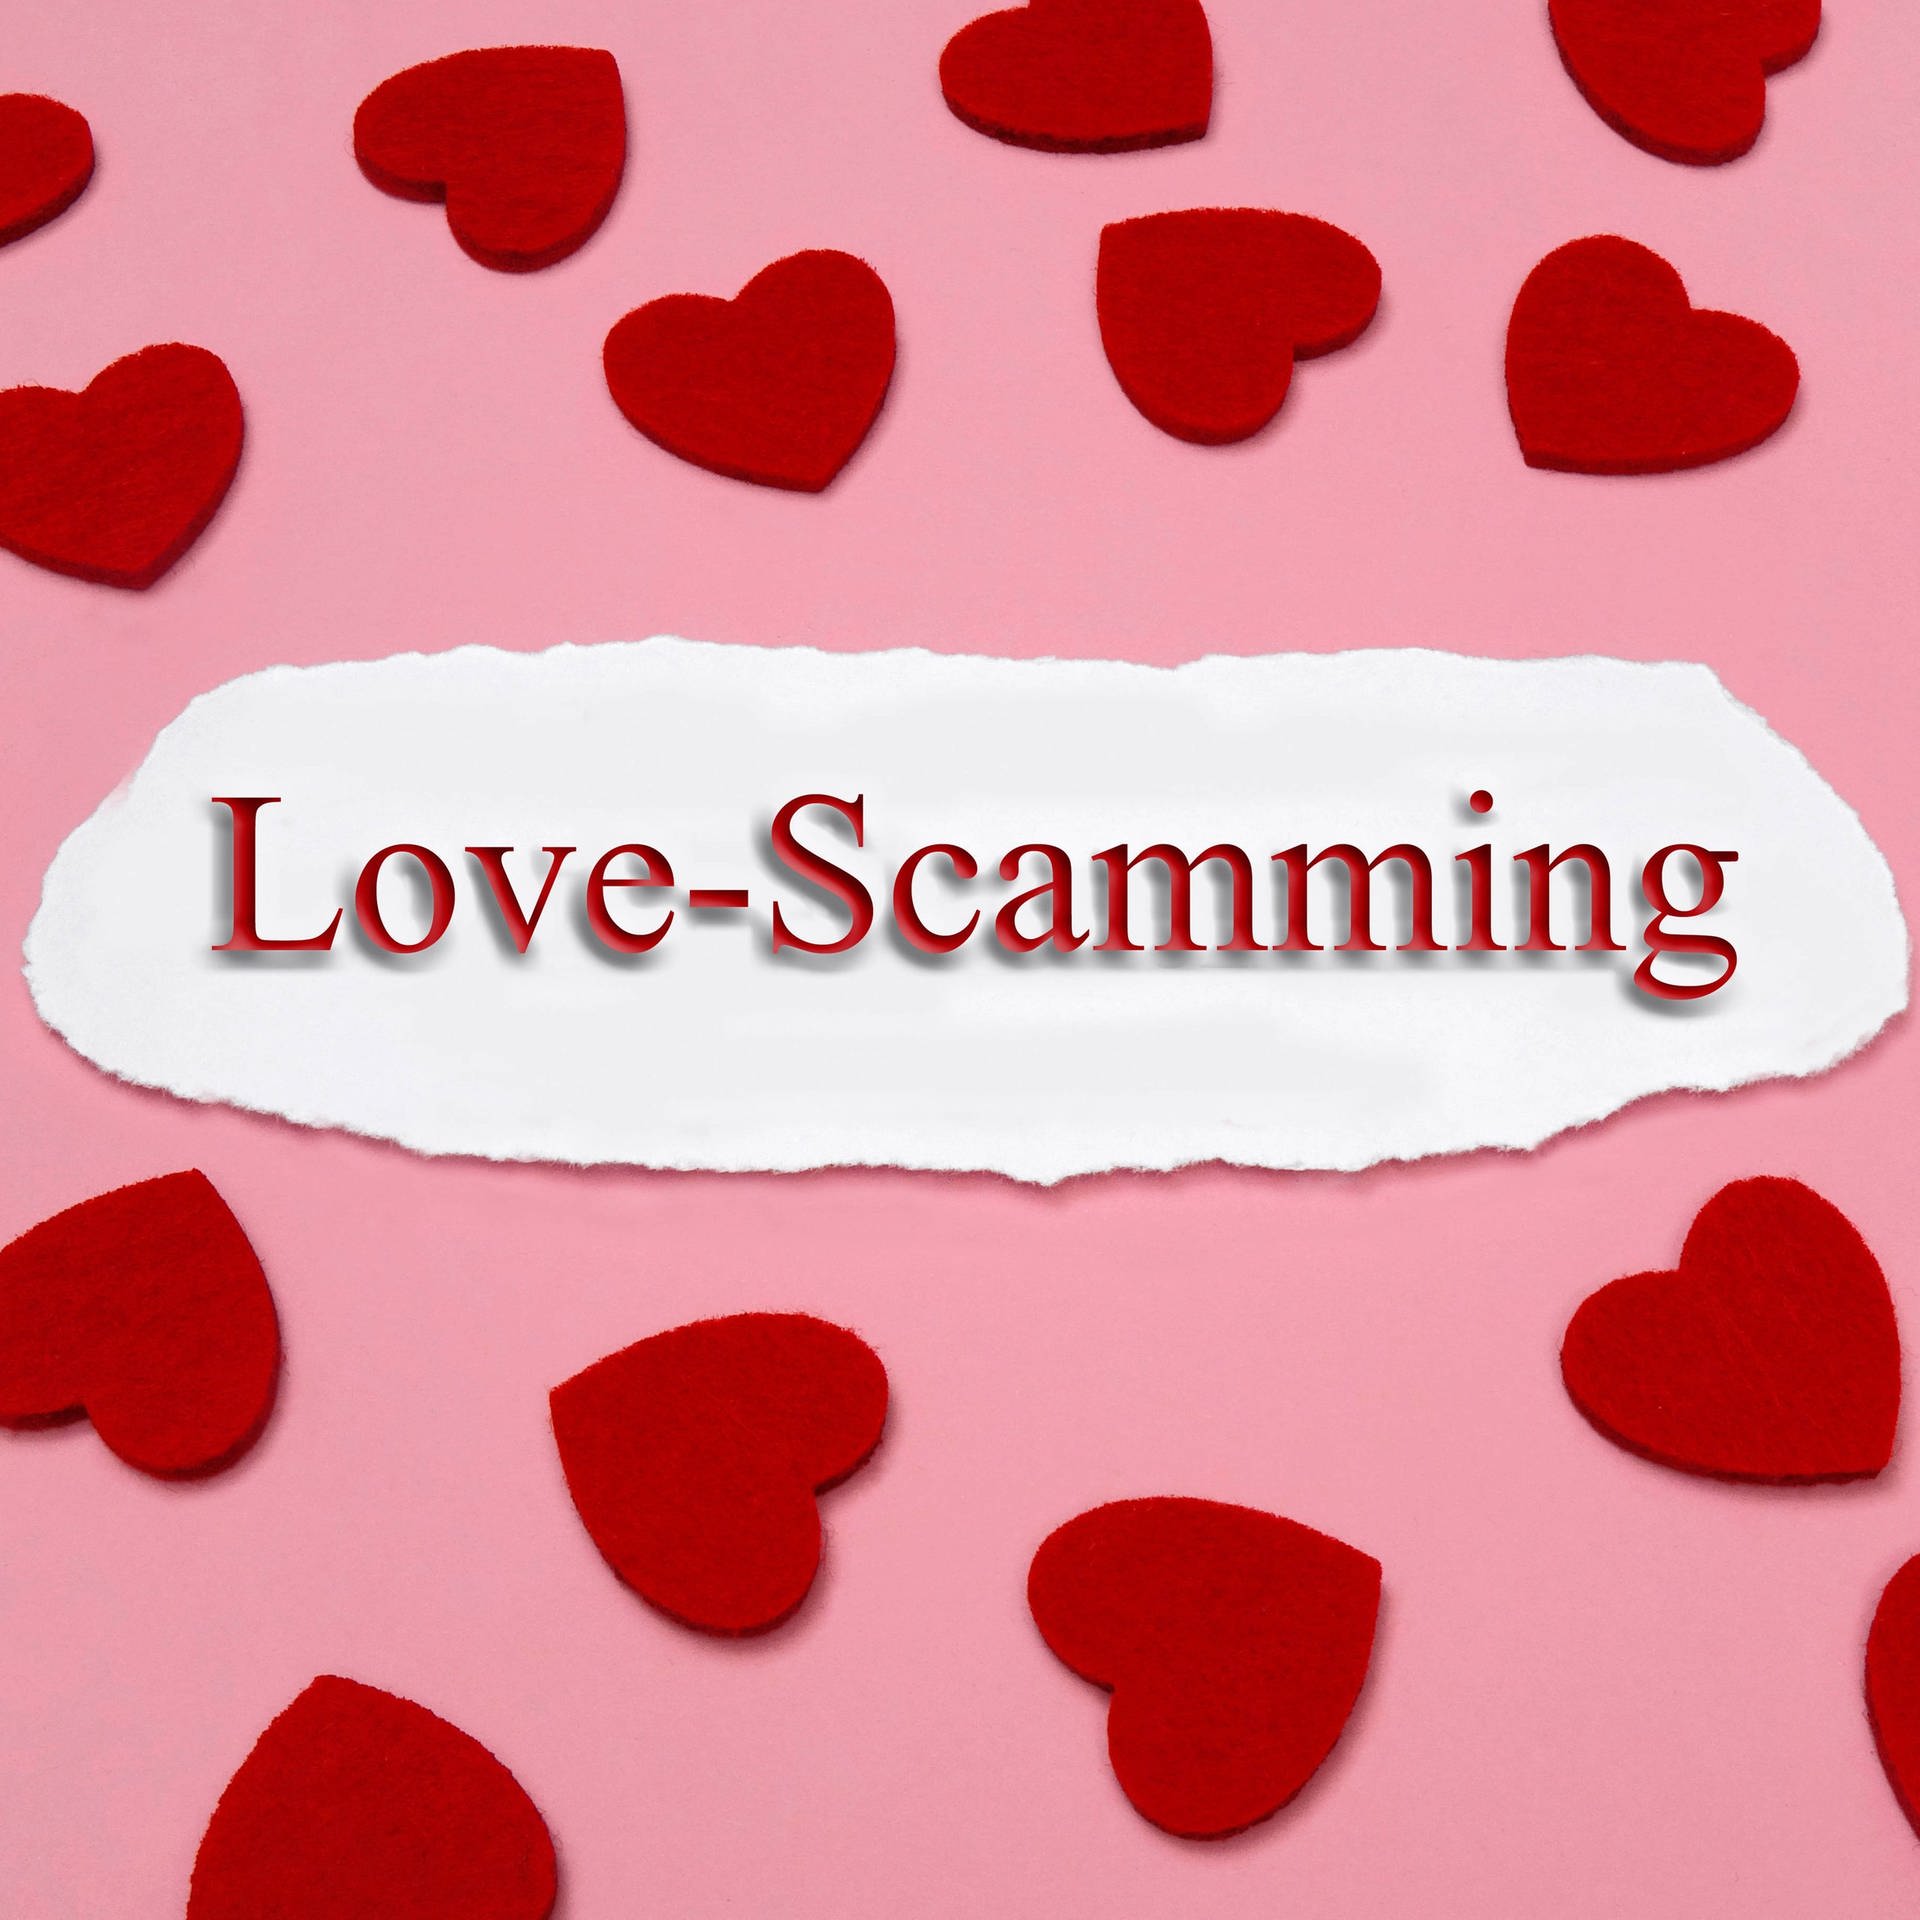 Love Scamming - Was tun gegen Liebebetrug im Netz?